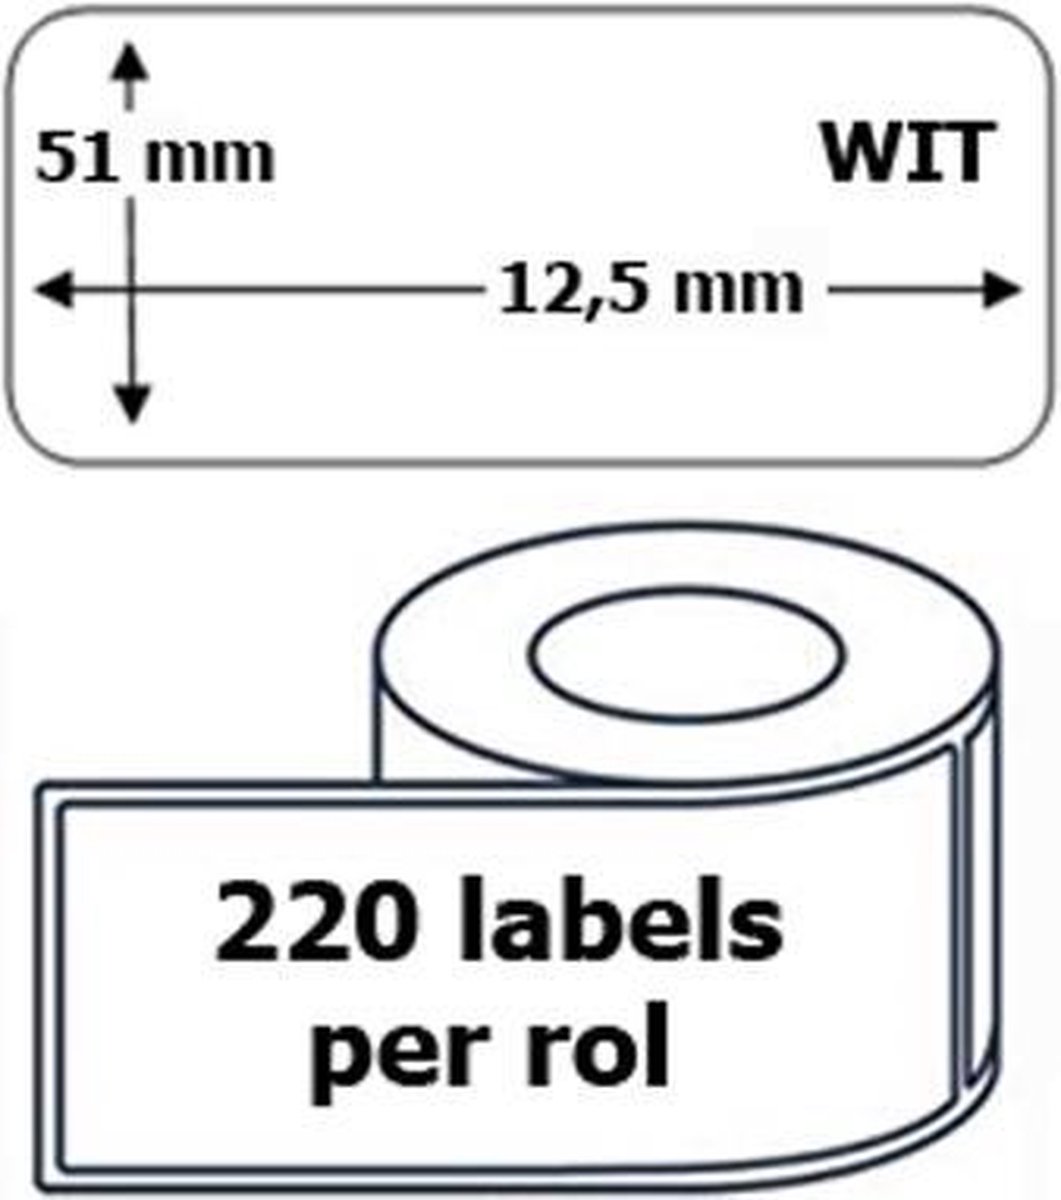 1x Dymo 99017 compatible 220 labels / 51 mm x 12,5 mm / wit / papier